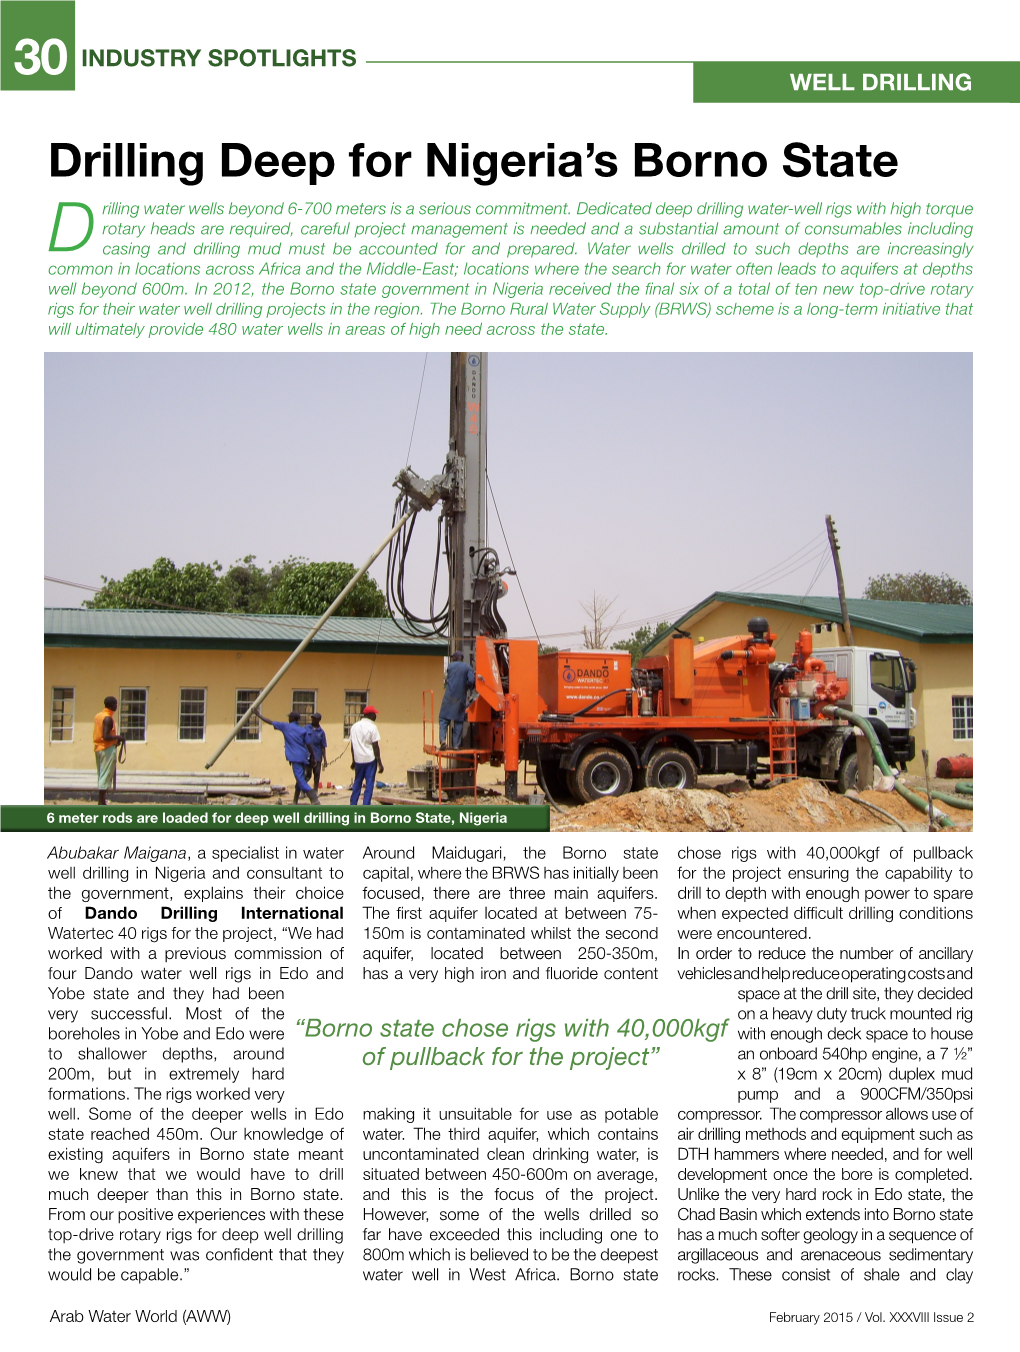 Drilling Deep for Nigeria's Borno State